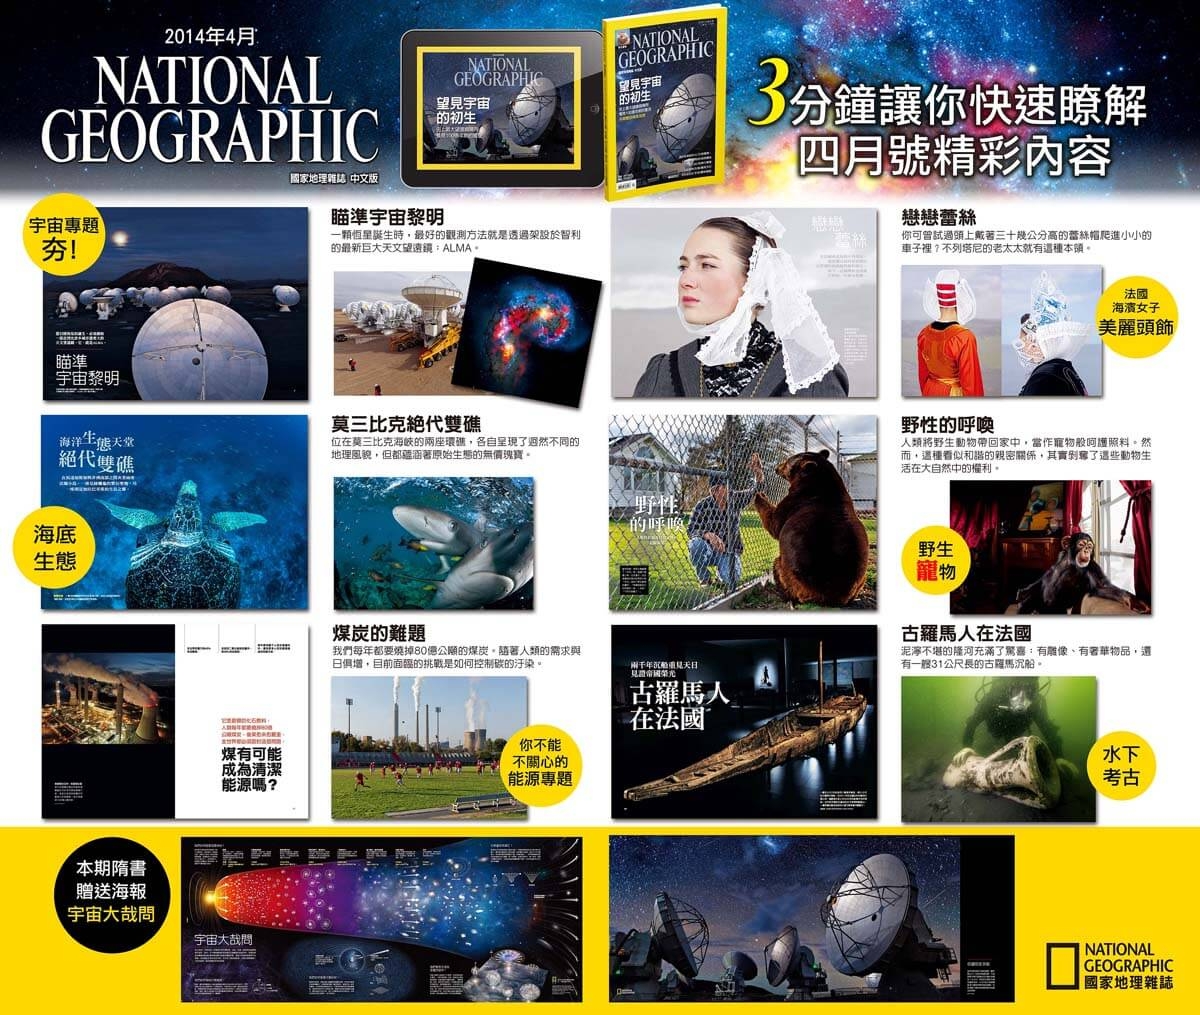 【新刊上架】《國家地理》雜誌中文版2014年4月號 ─ 望見宇宙的初生